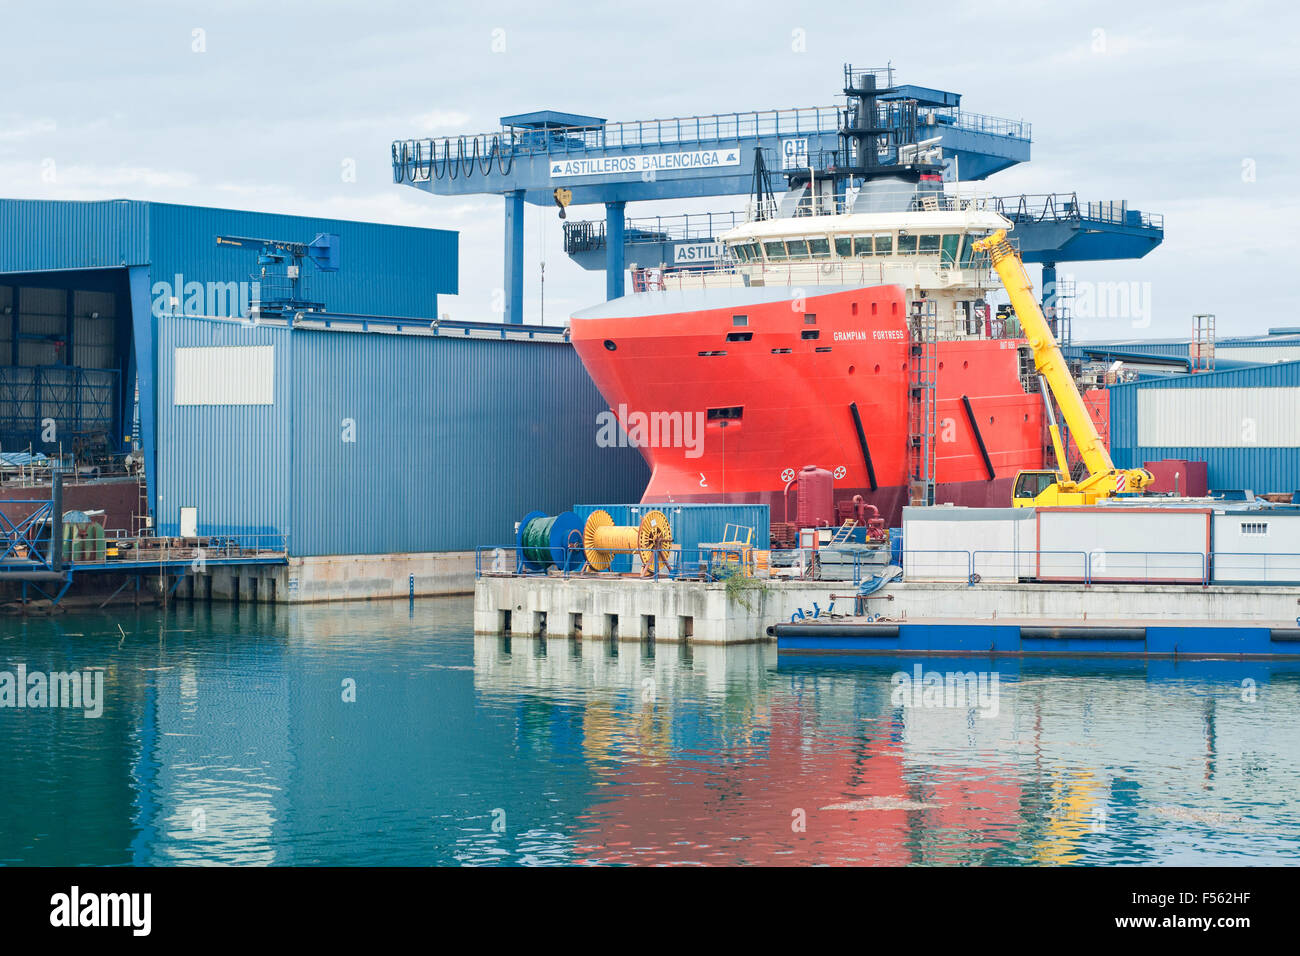 En el barco rojo Balenciaga astillero en el puerto de Zumaia. Comunidad  Autónoma del País Vasco. España Fotografía de stock - Alamy